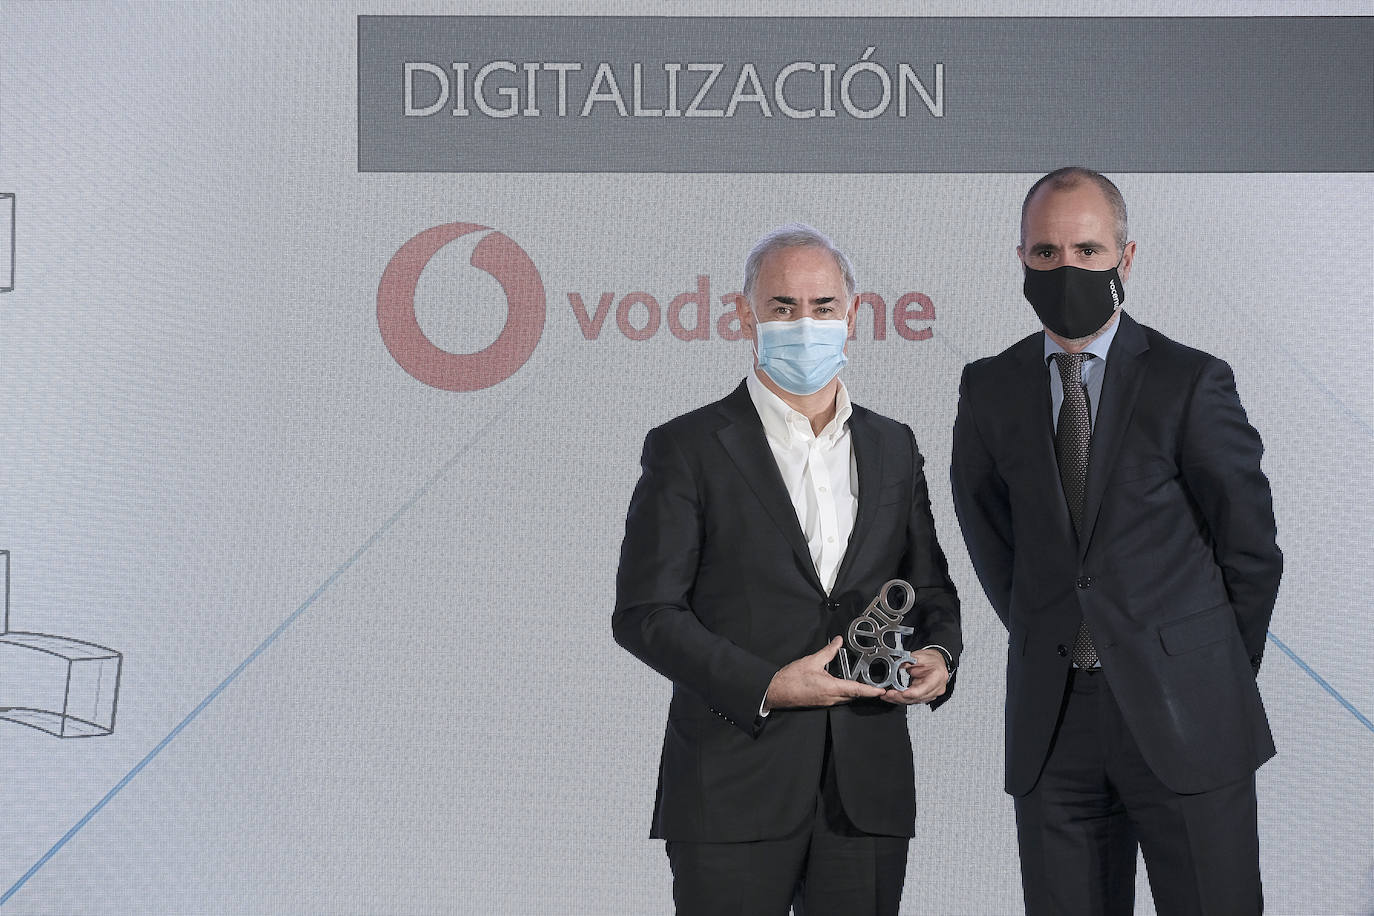 Íñigo Iribarnegaray, director general de nuevos negocios de Vocento, entrega el premio a Antonio Coimbra, presidente de Vodafone.